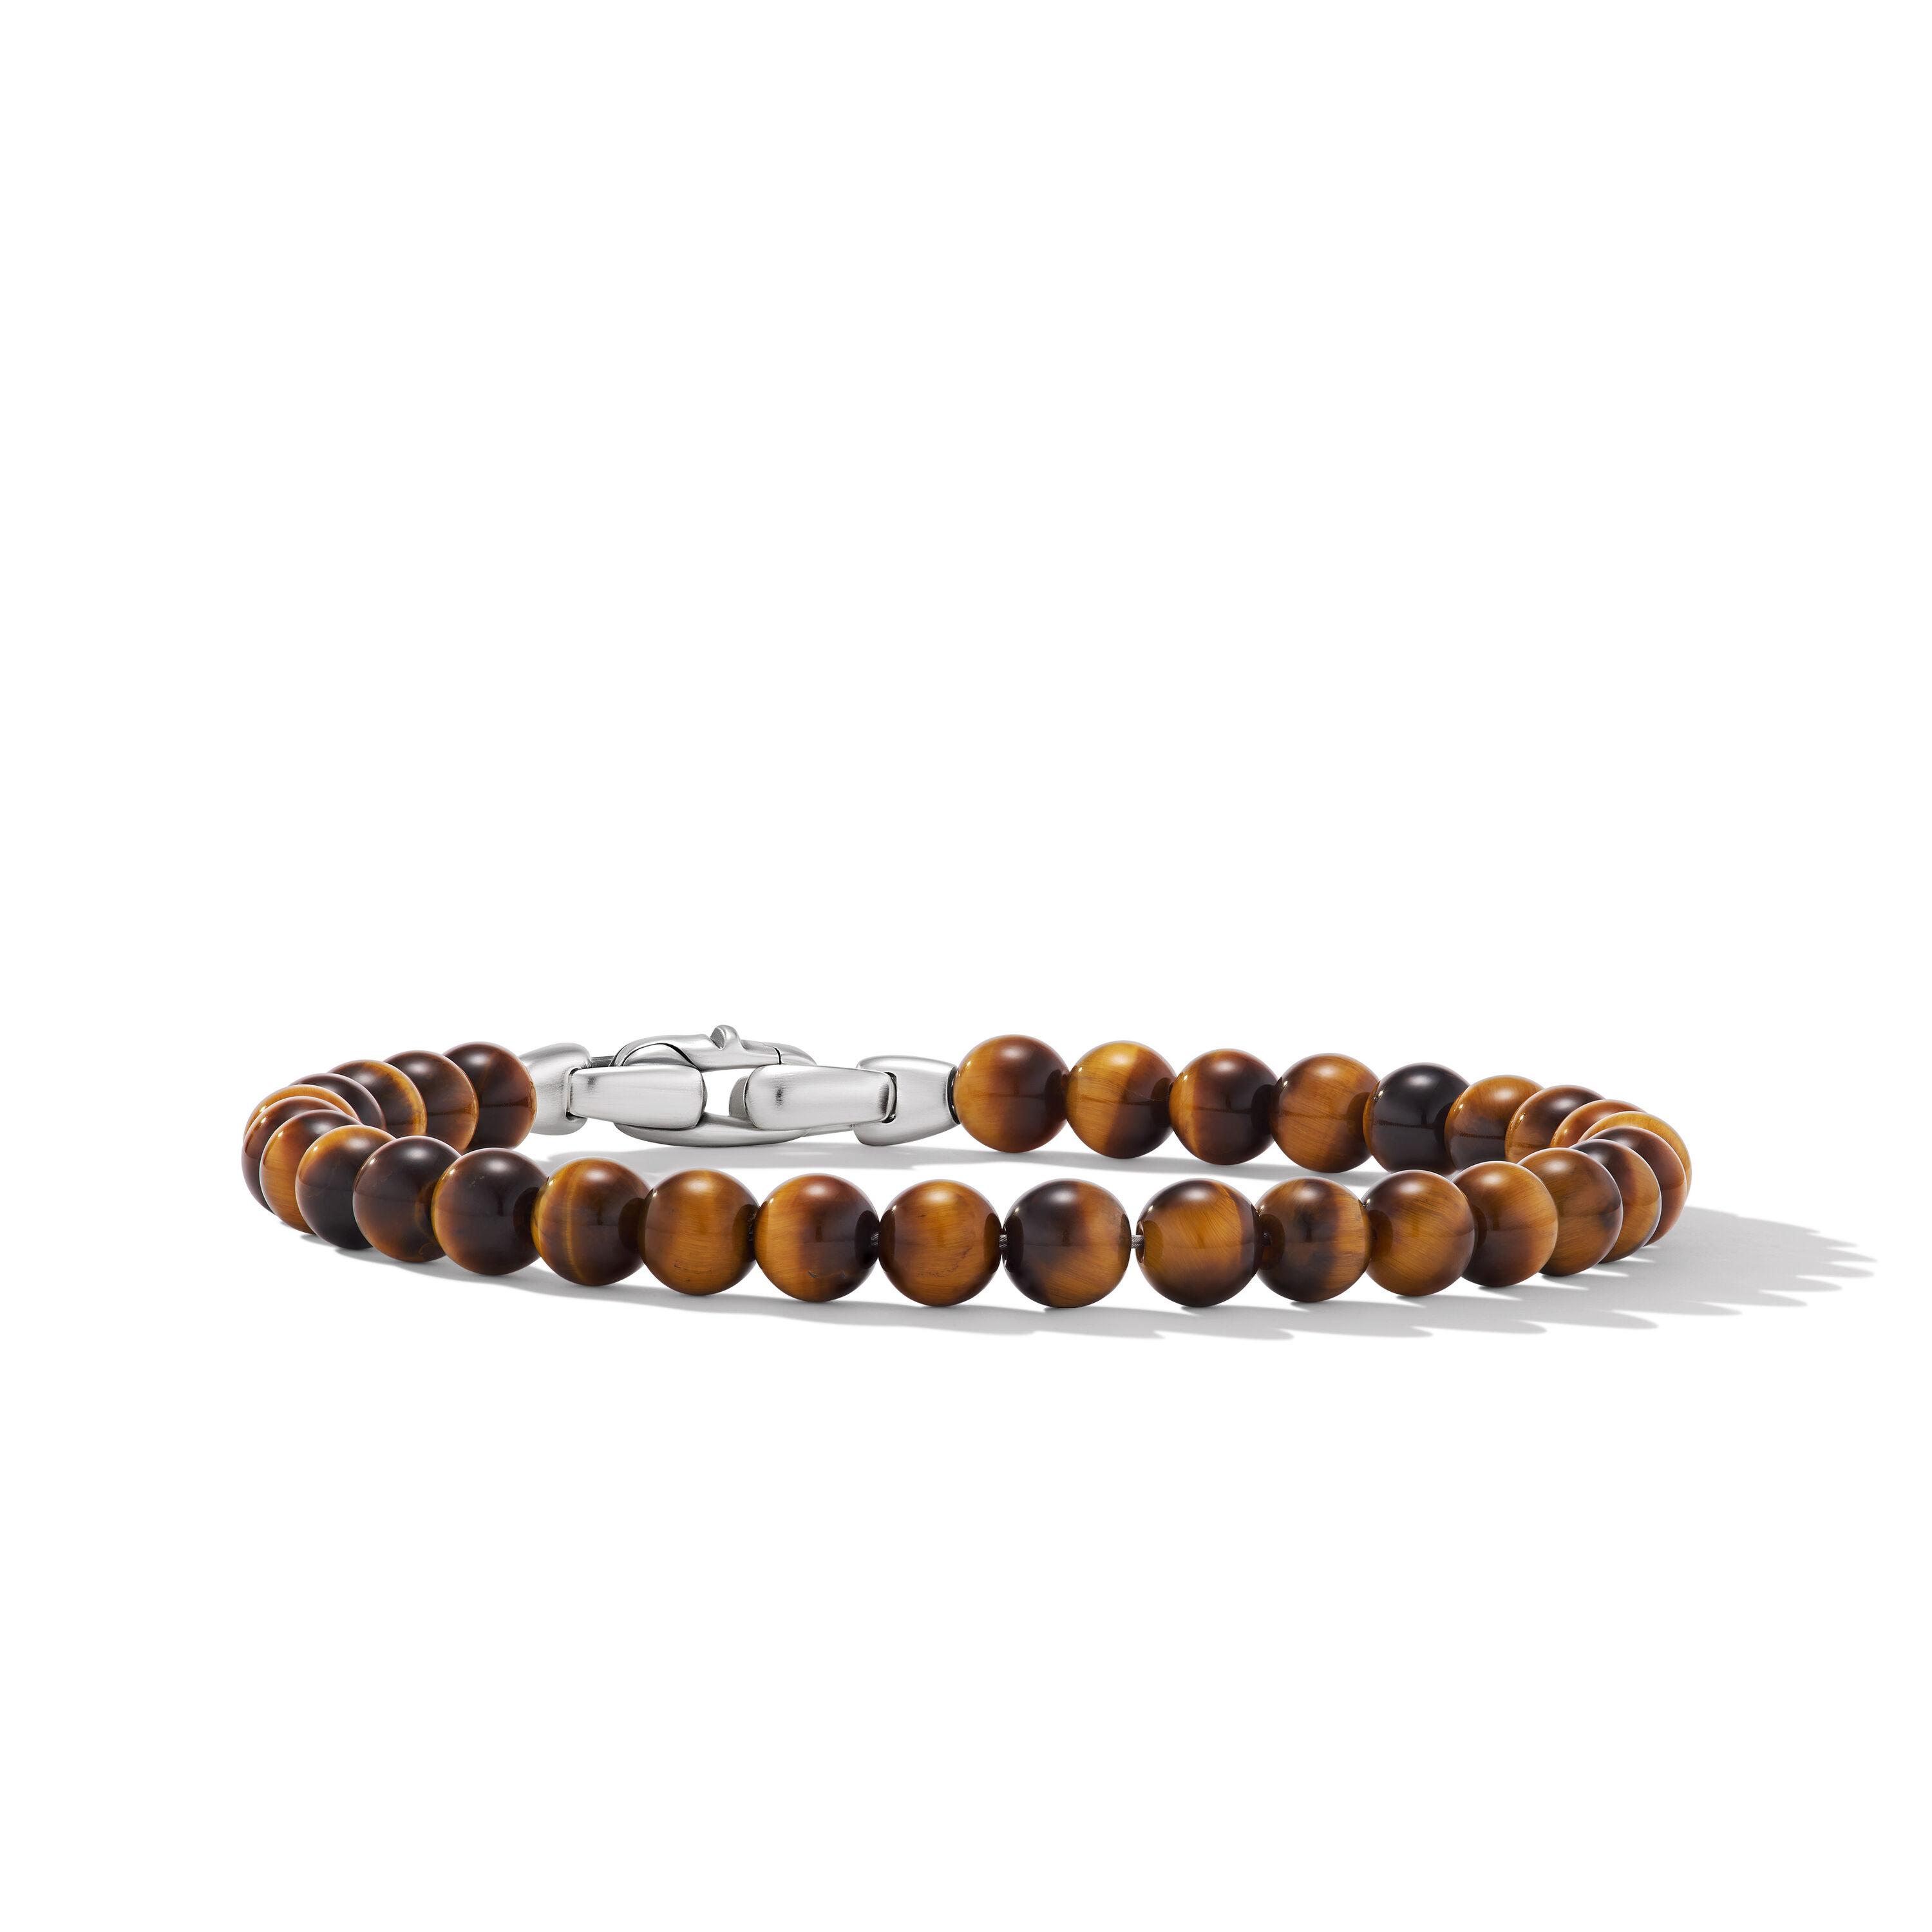 David Yurman Men's 6mm Spiritual Beads Bracelet with Tiger's Eye